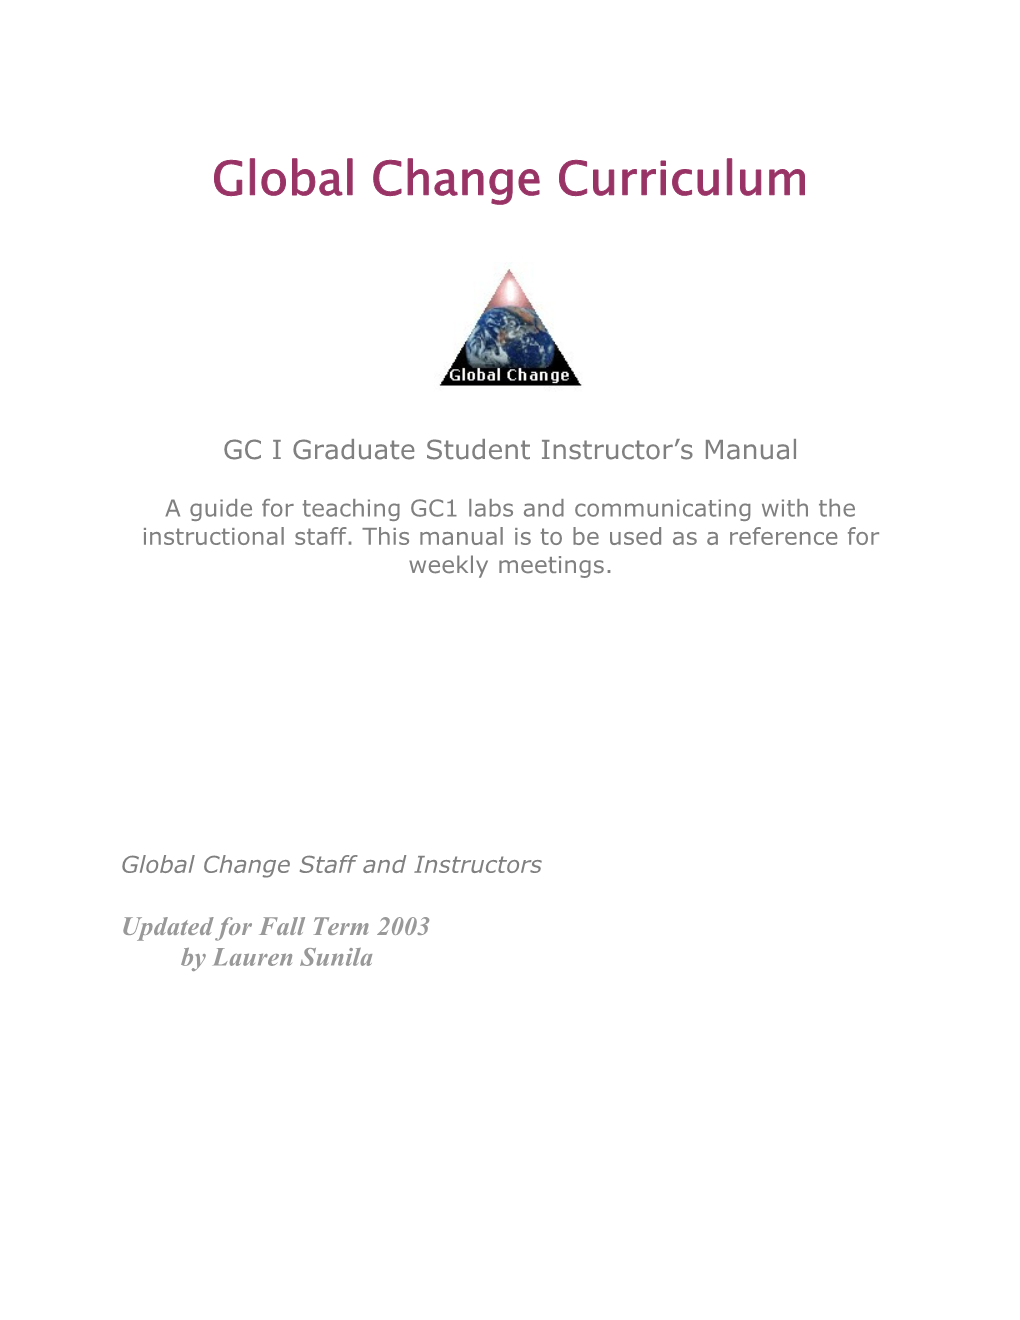 Global Change Program